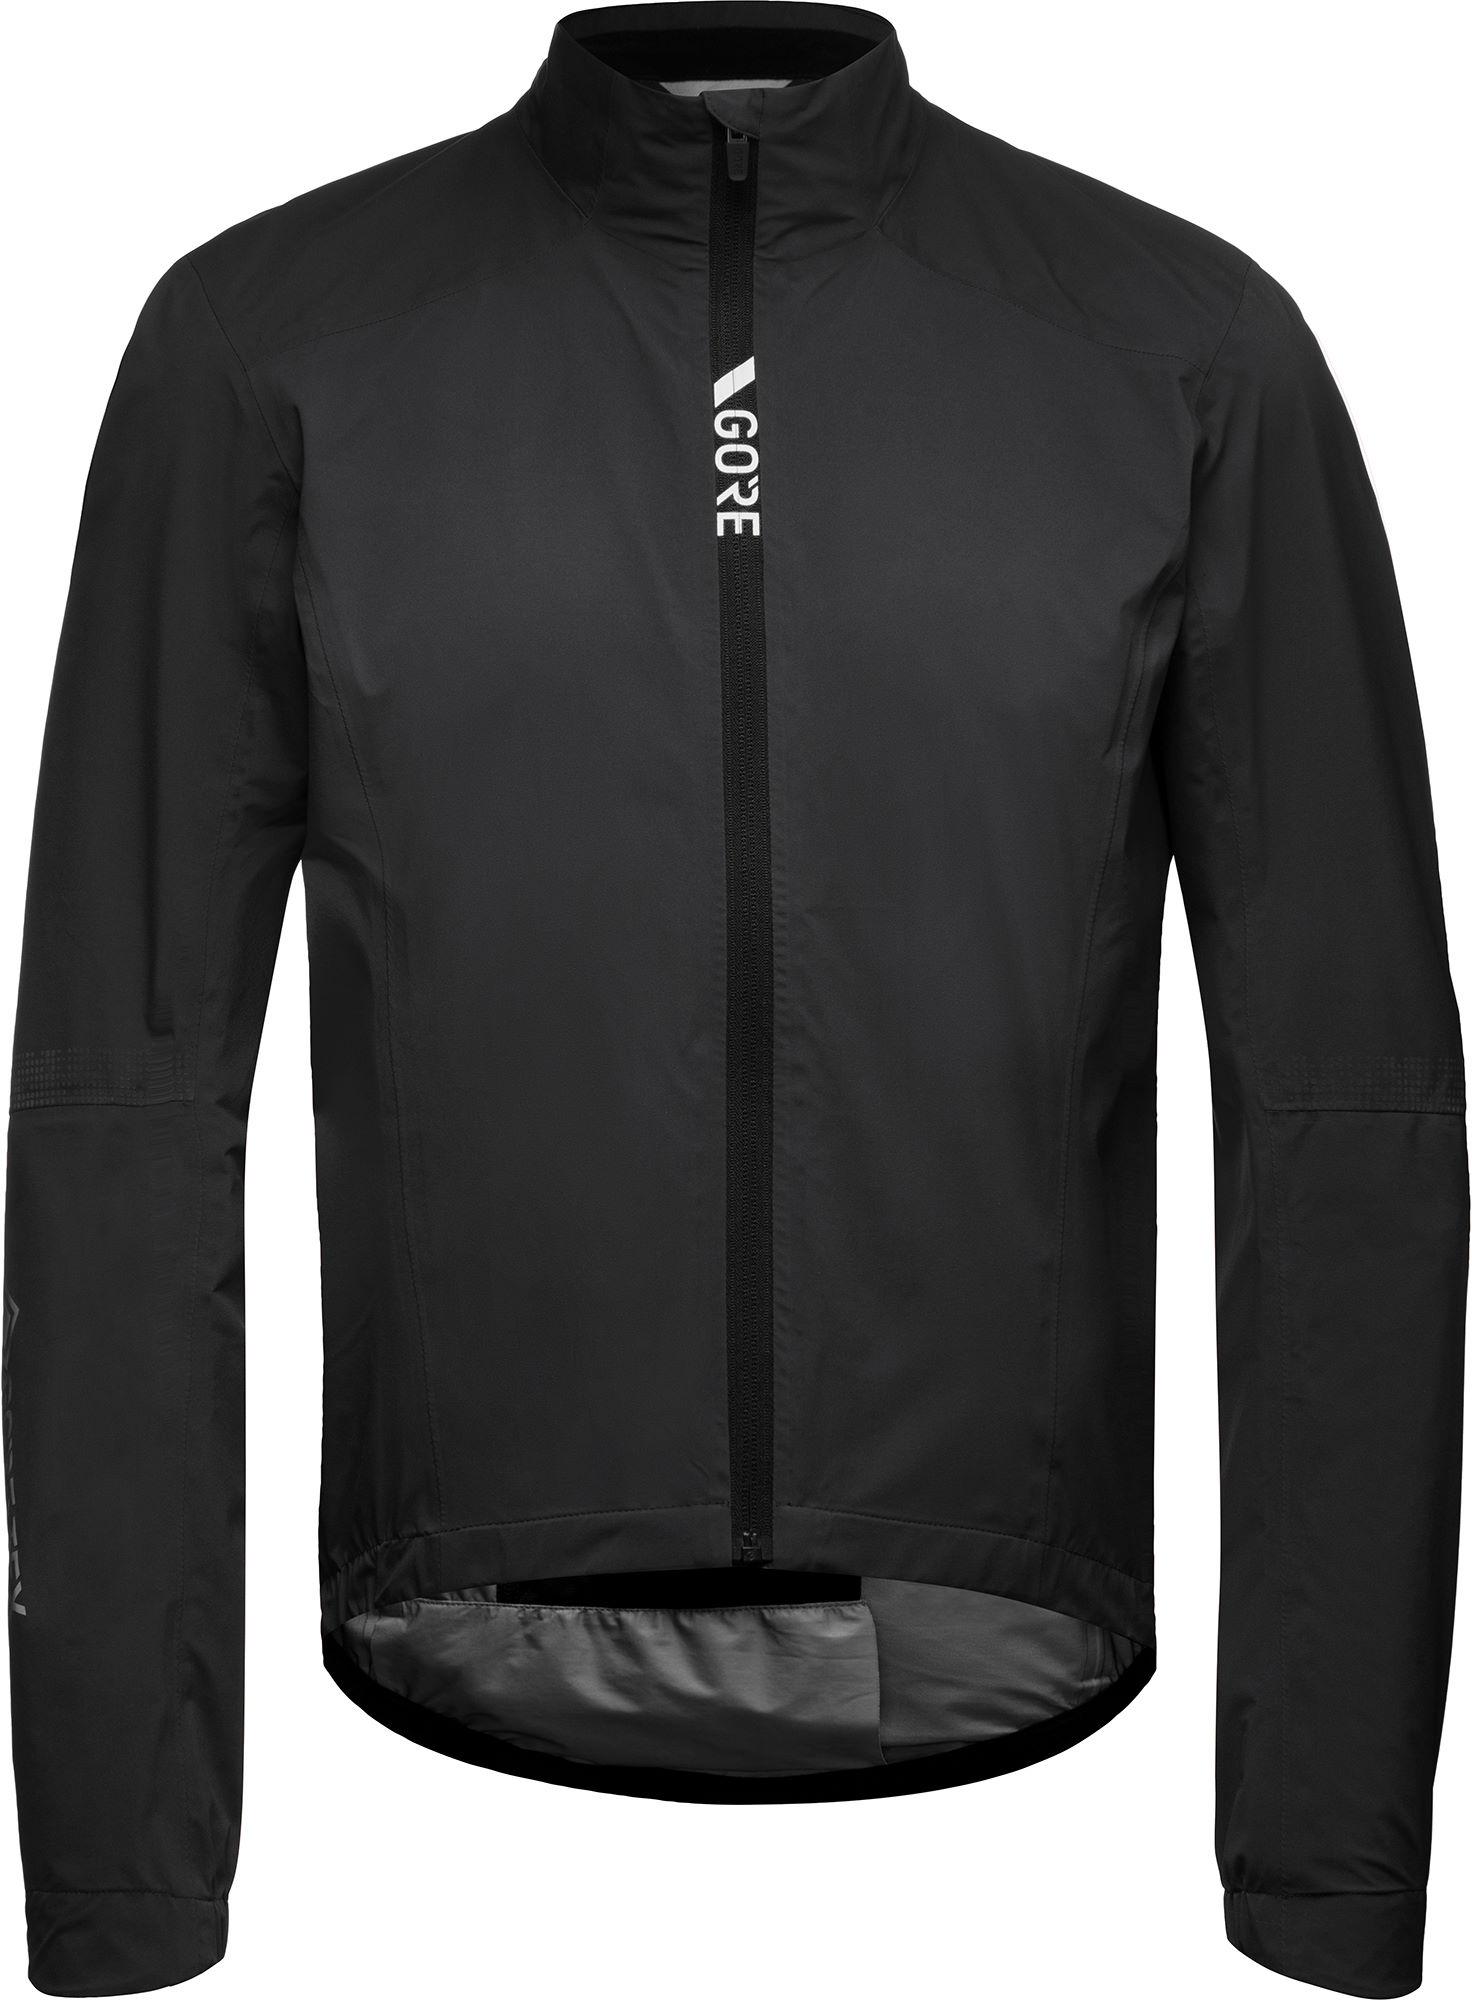 Gorewear Torrent Cycling Jacket - Black